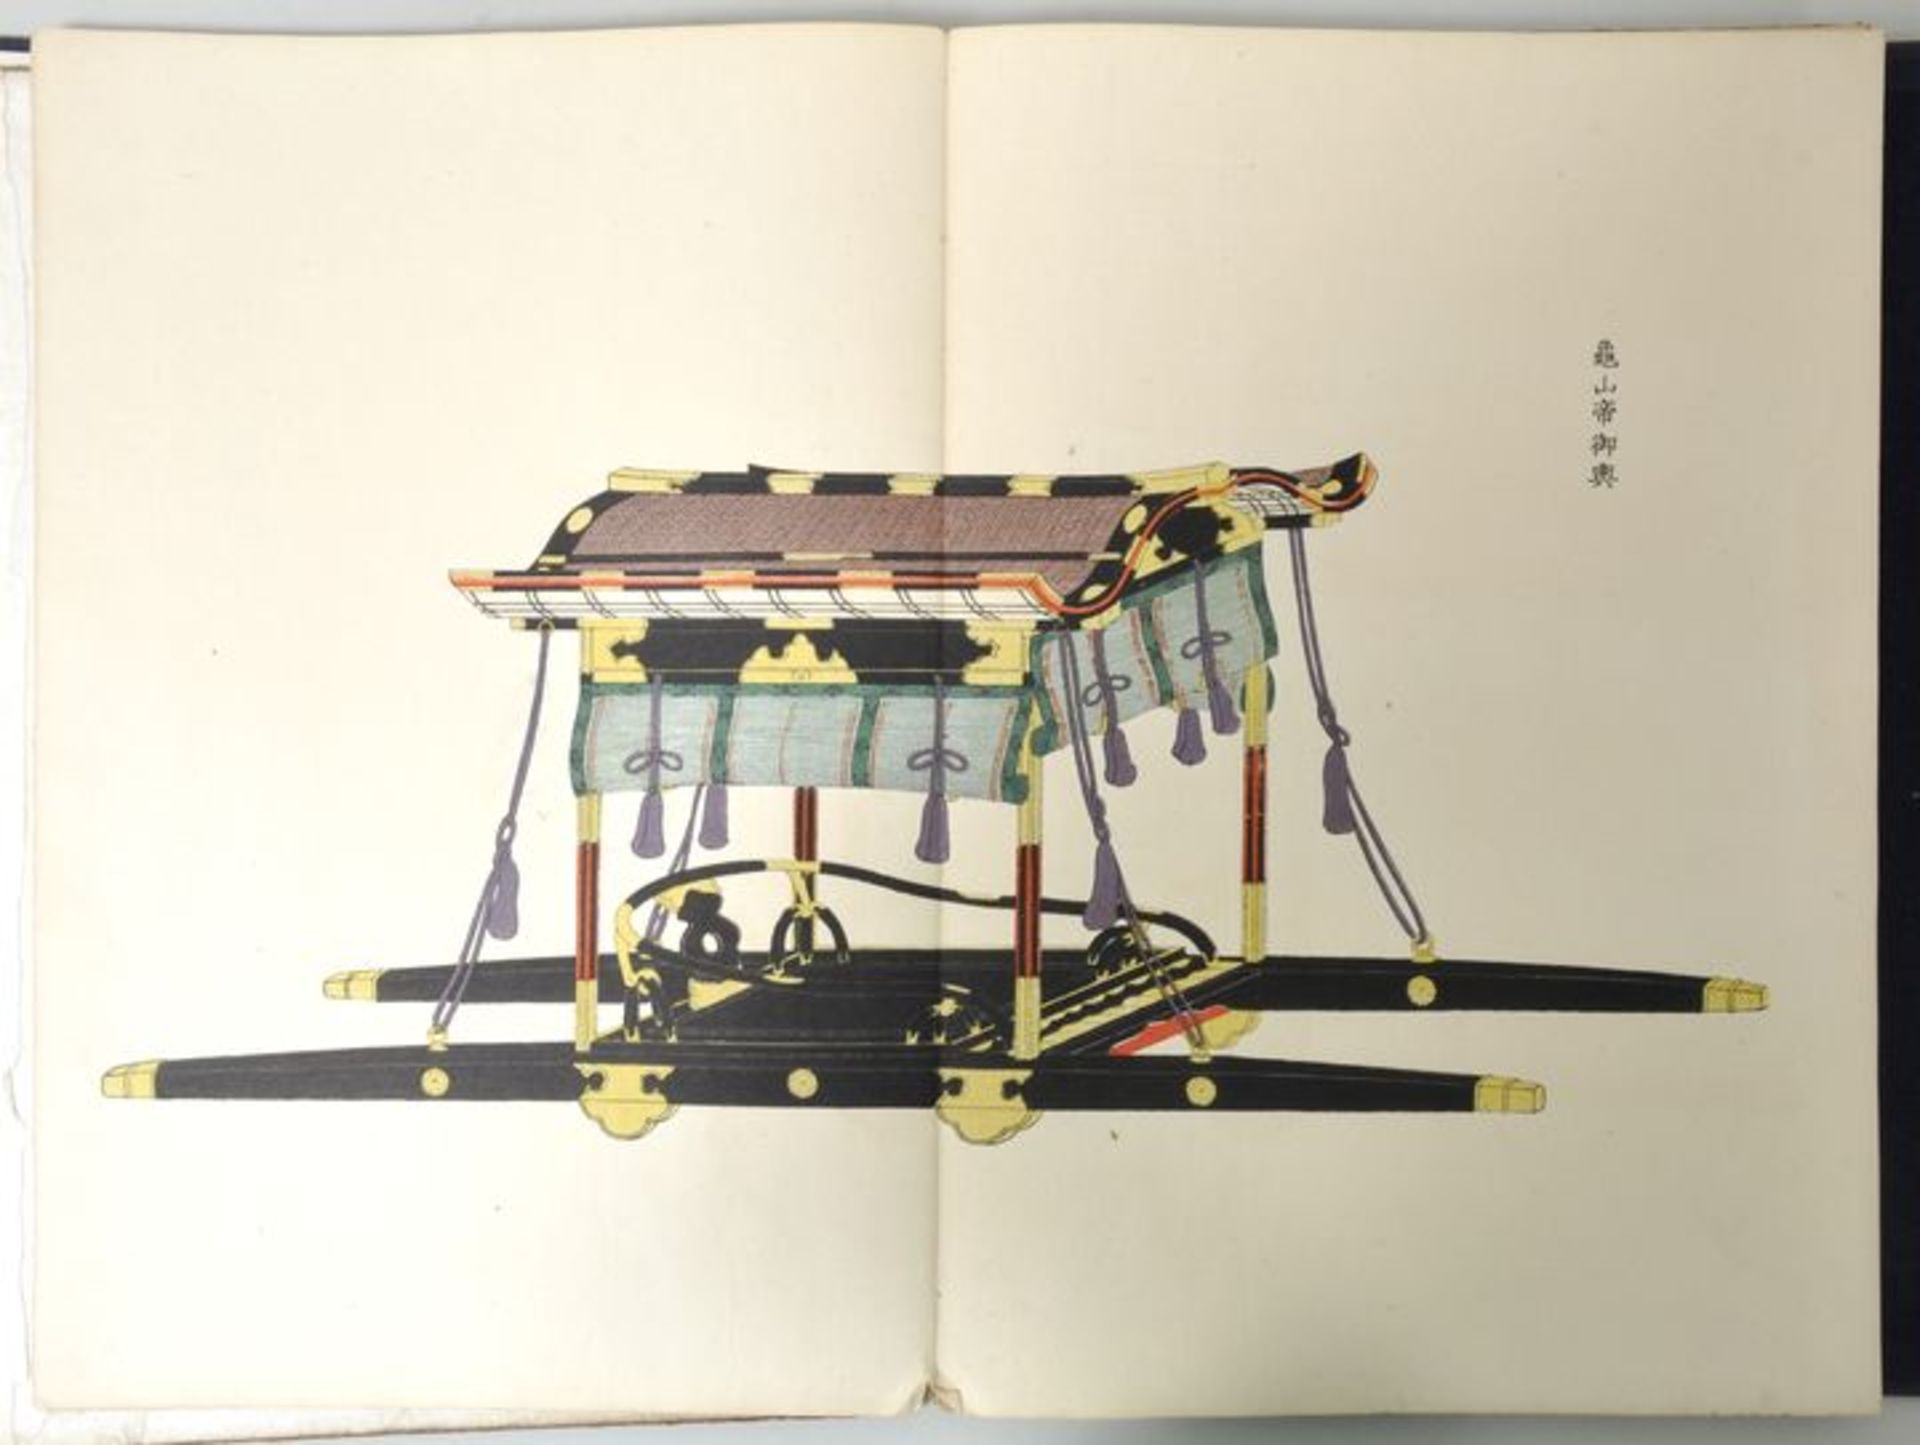 Yosha Zuko Fuzu, Japan, Periode Meiji (um 1900)Katalog mit Modellen luxuriöser Sänften und Kutschen. - Bild 2 aus 4